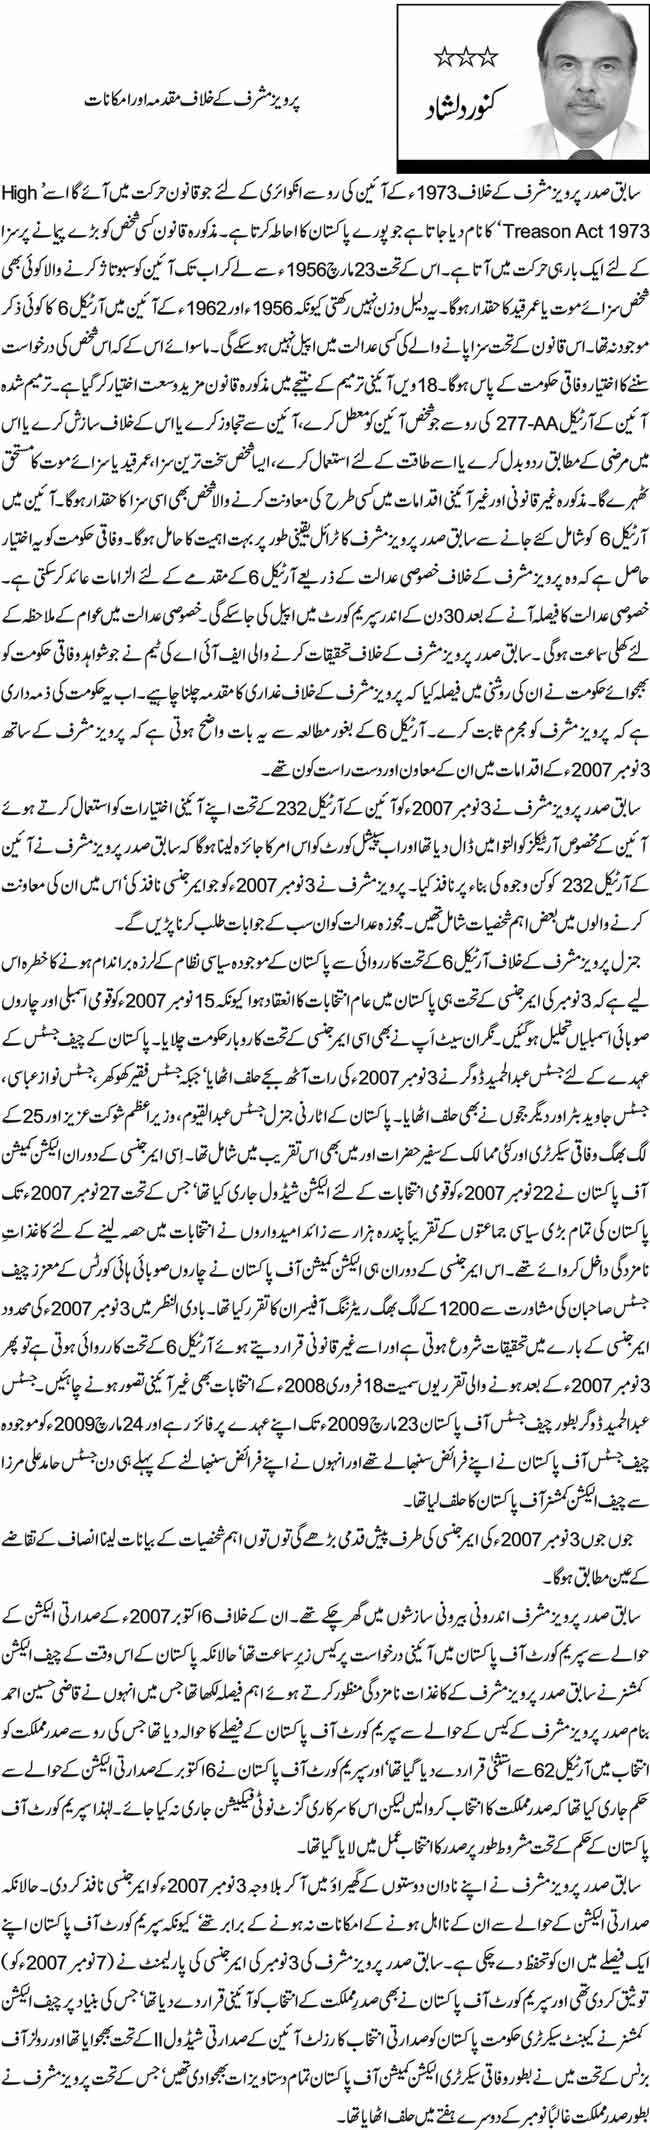  پرویز مشرف کے خلاف مقدمہ اور امکانات  